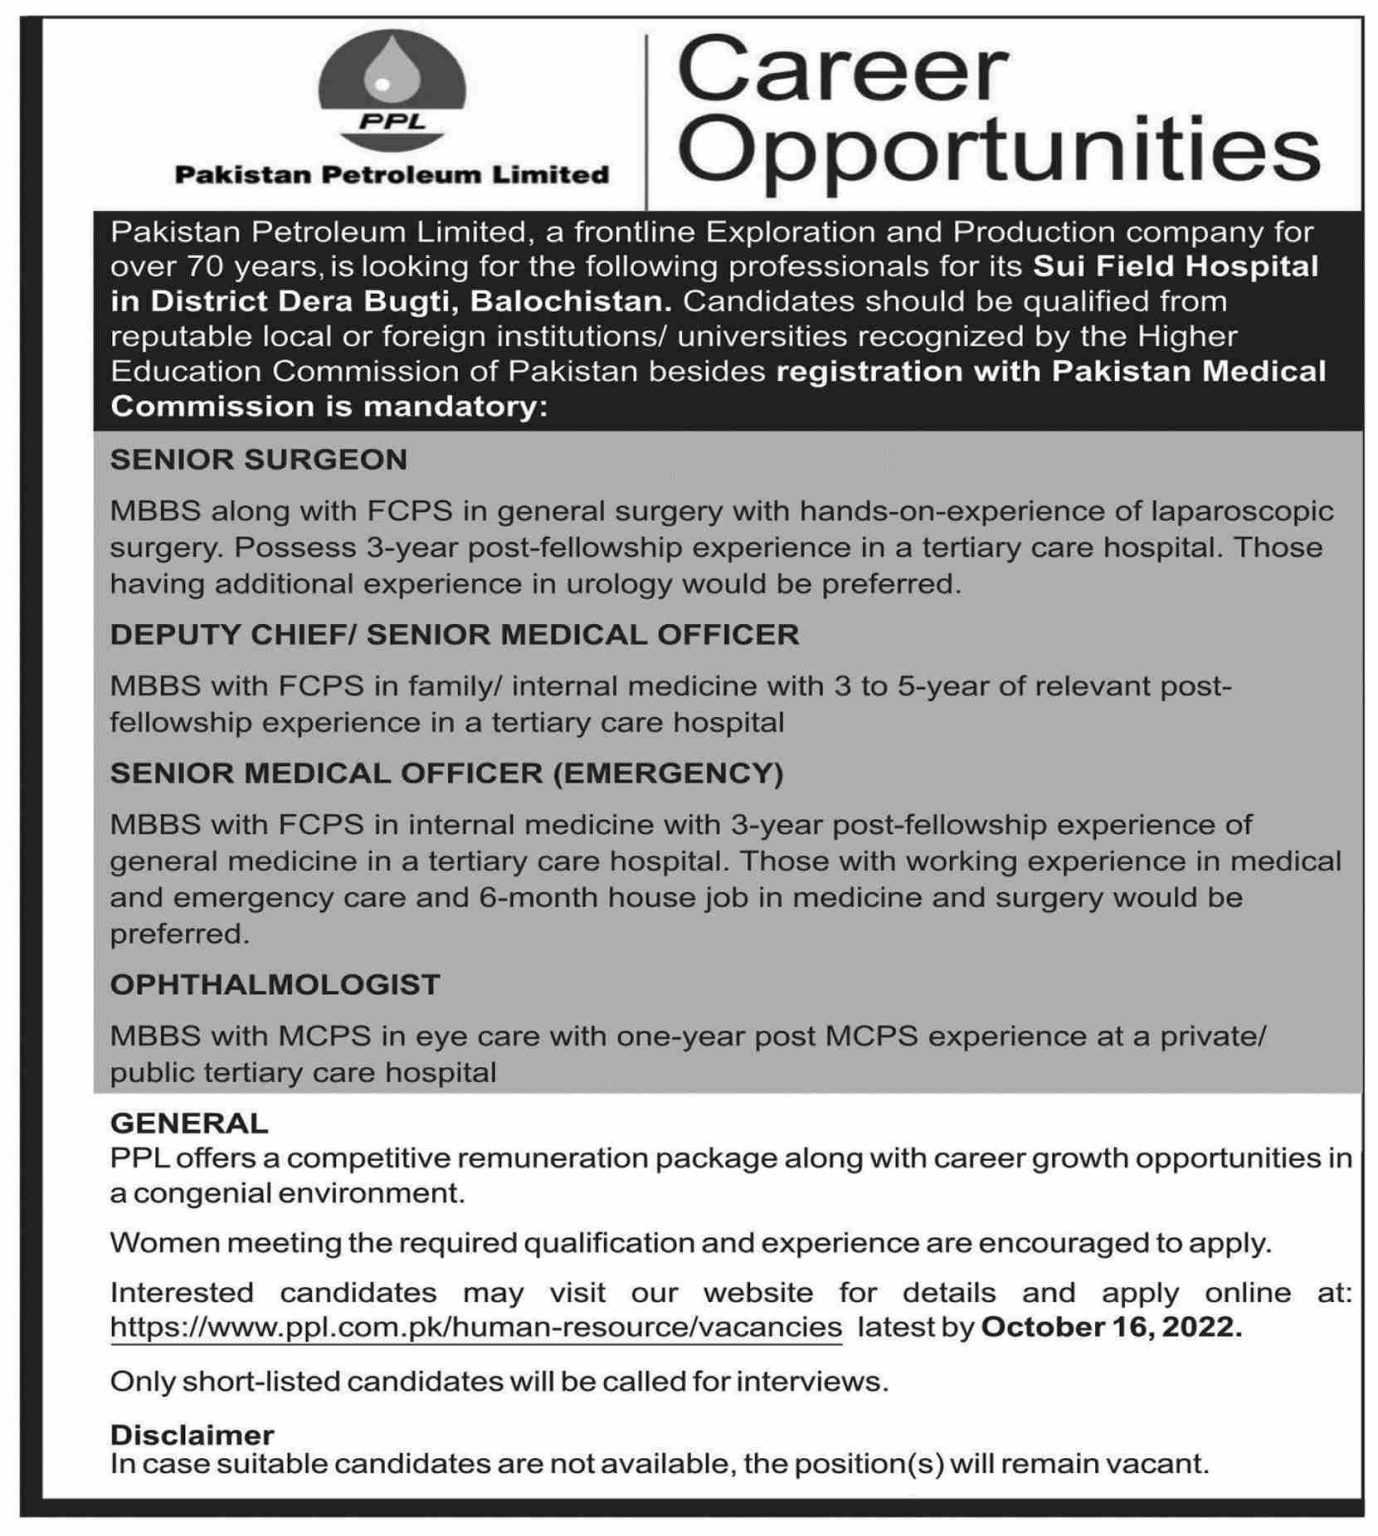 Pakistan Petroleum Limited Careers 2022